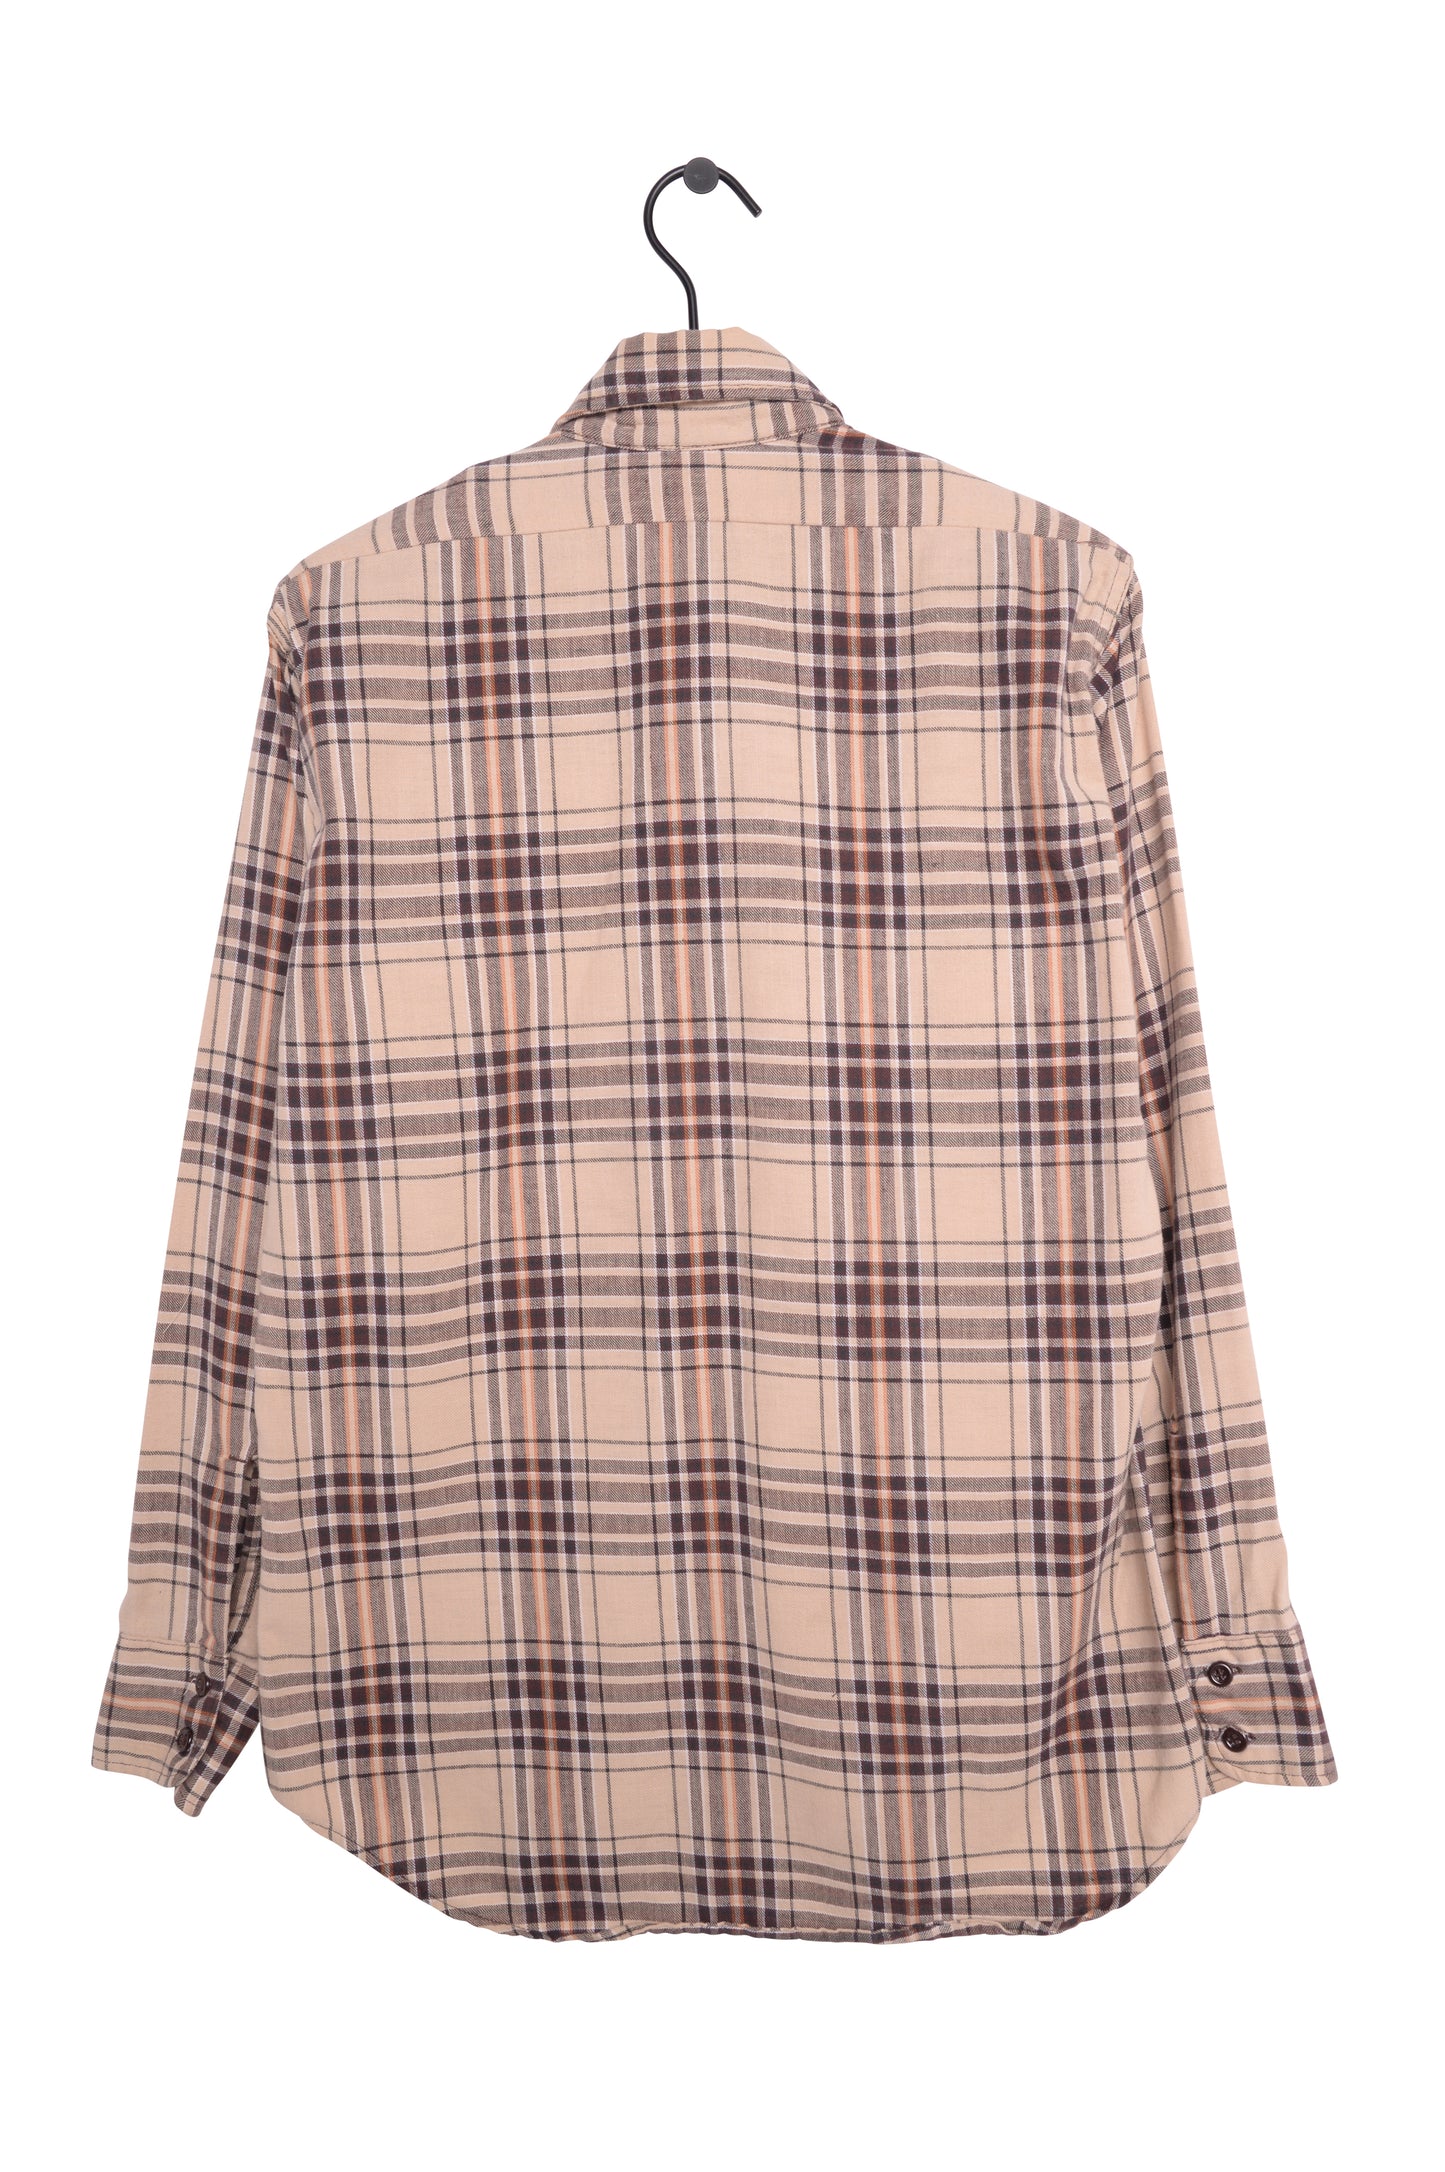 1970s Levi's Flannel Shirt